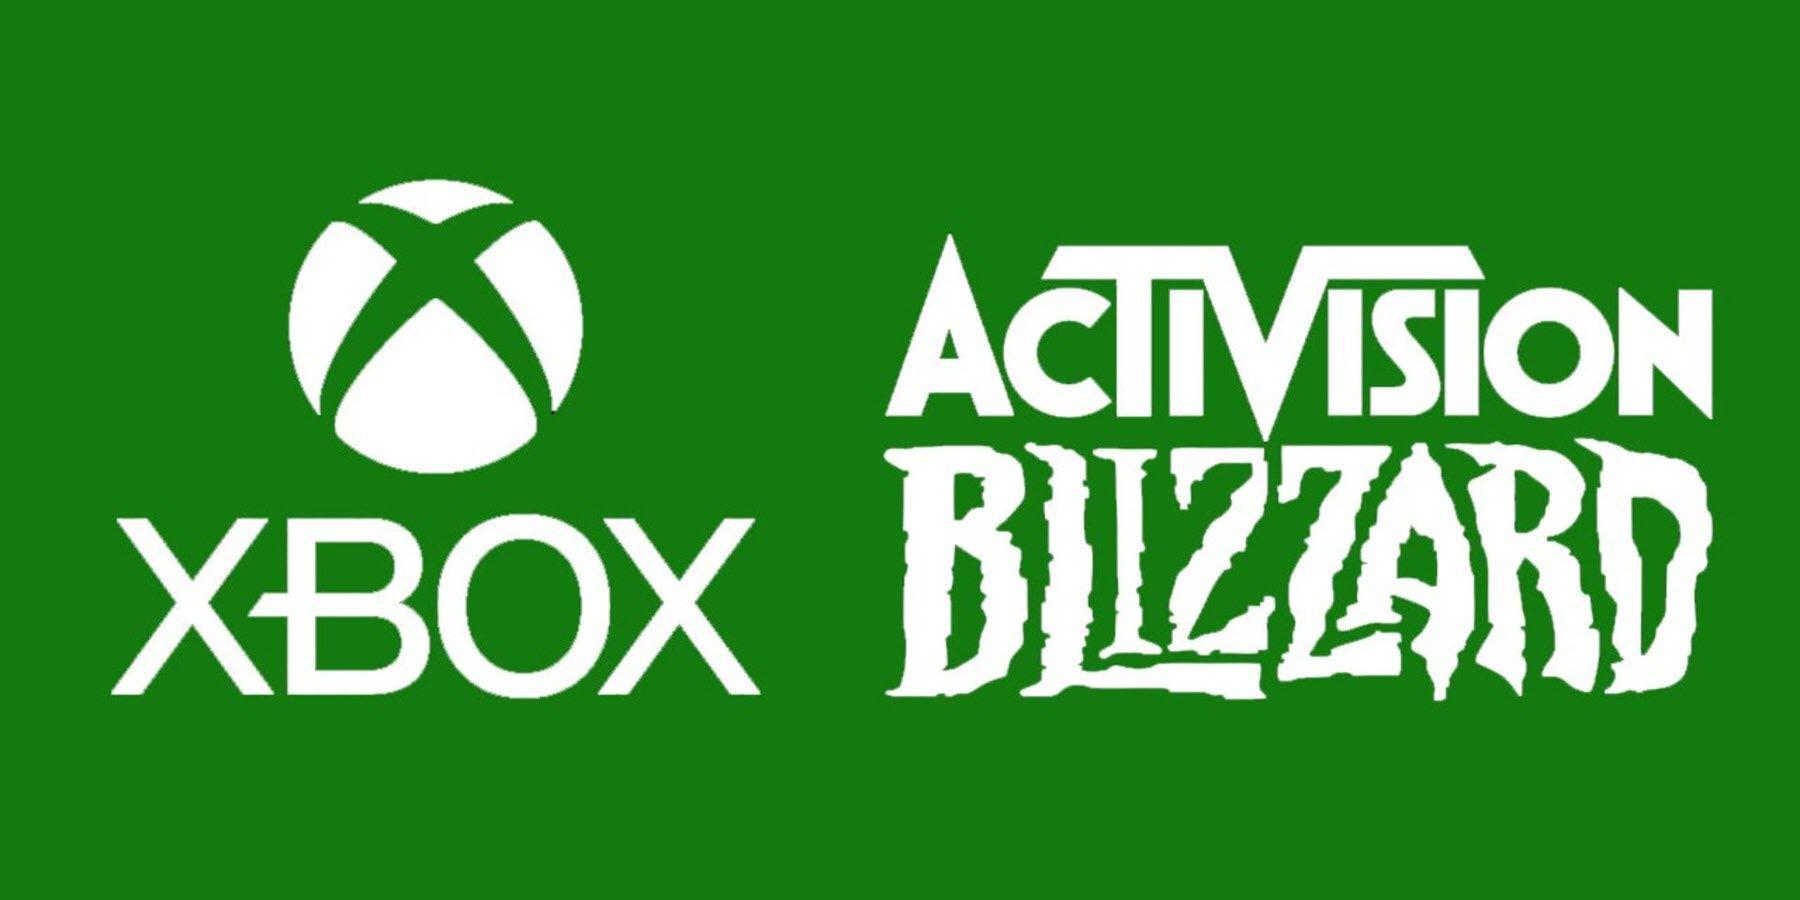 UE supostamente se opõe à compra da Activision Blizzard pela Microsoft